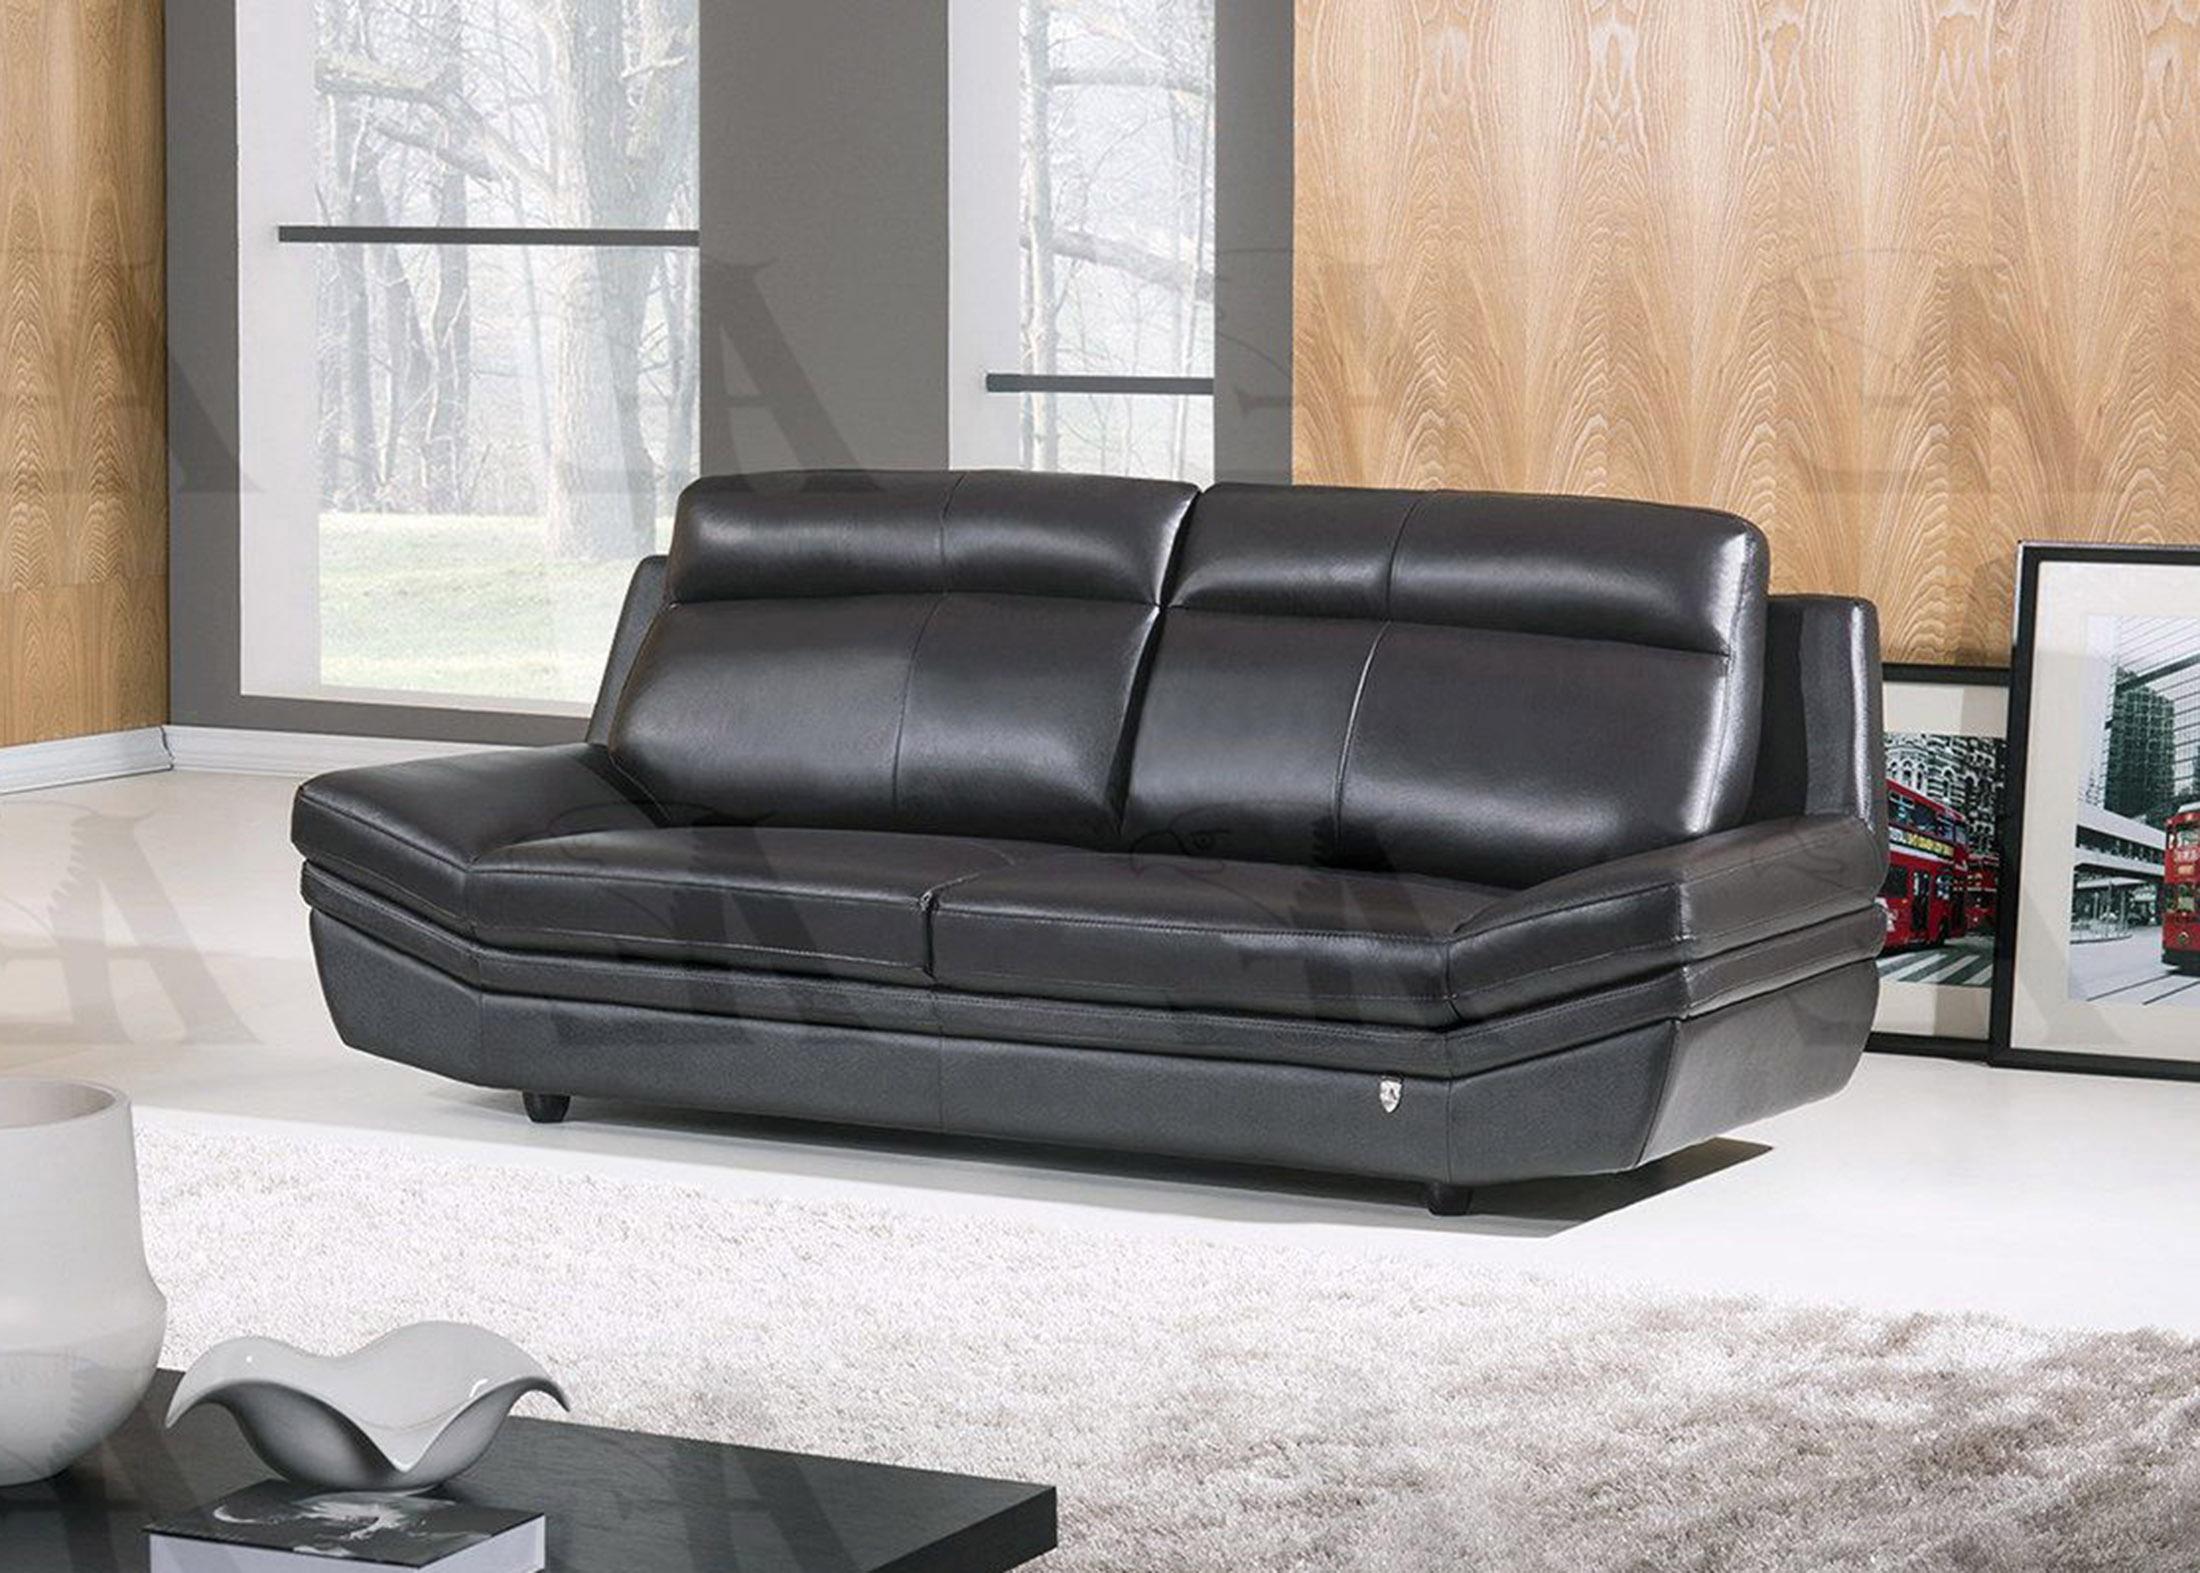 

    
American Eagle Furniture EK075-BK Black Sofa Italian Leather Modern
